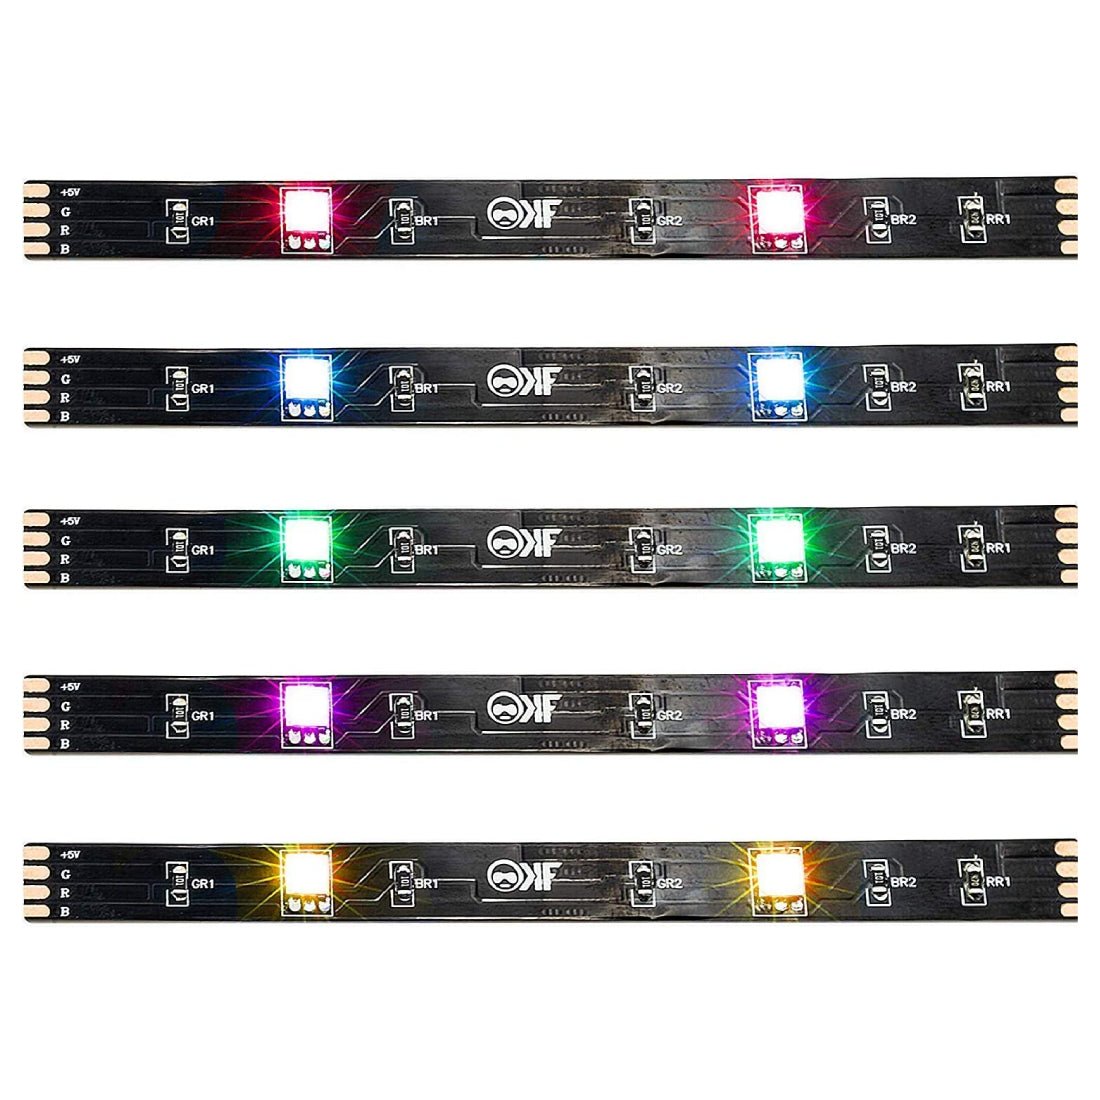 Kontrolfreek Gaming LED Strip Lights - 3.6m - إضاءة - Store 974 | ستور ٩٧٤